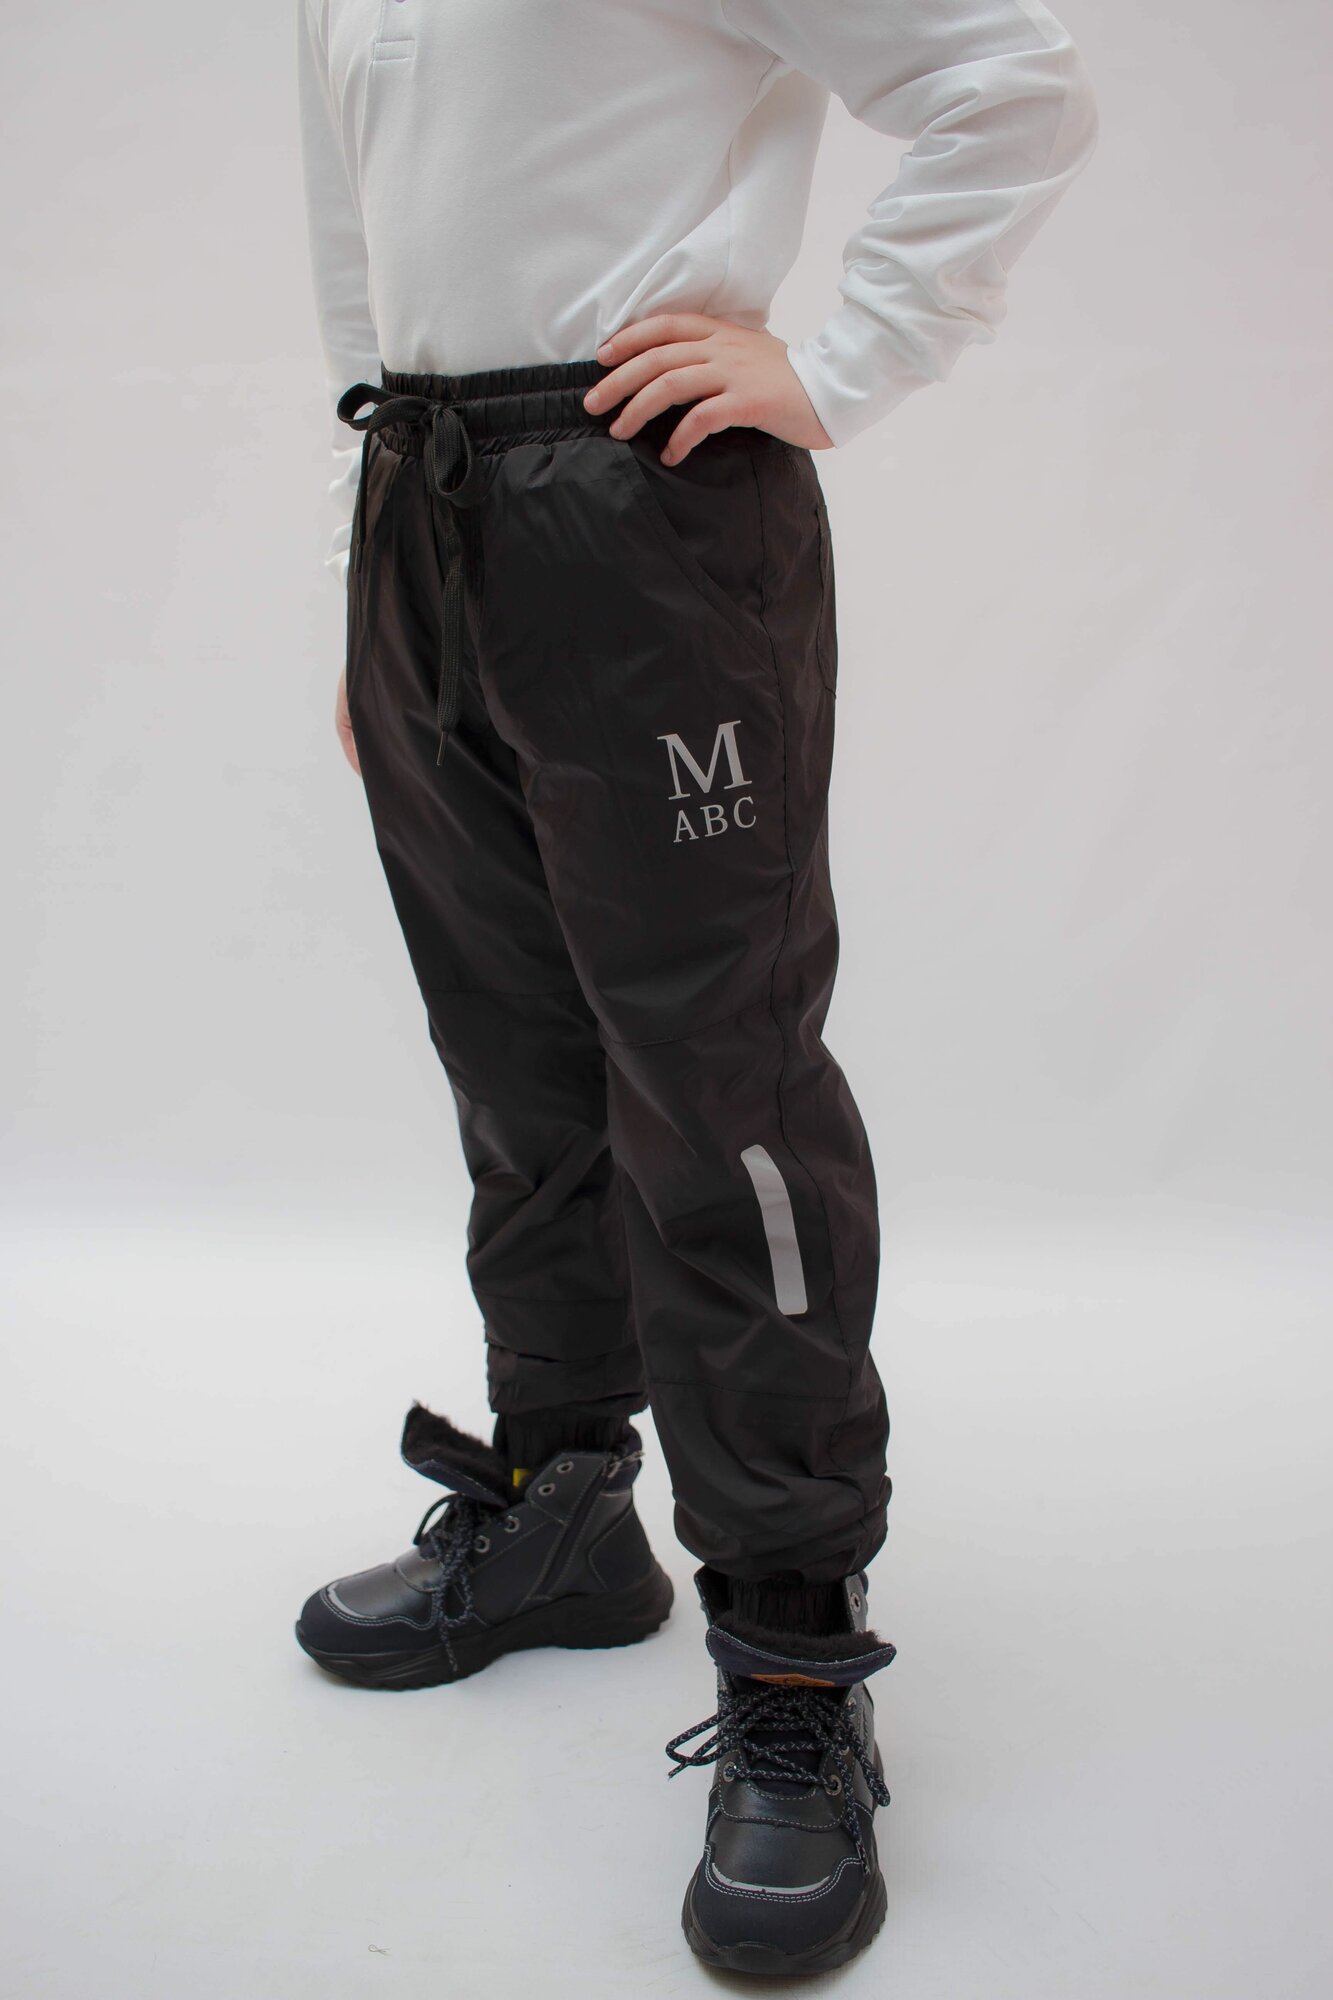 Купить Брюки утепленные для мальчика Merkiato/Болоневые штаны для мальчиказа 1299р. с доставкой